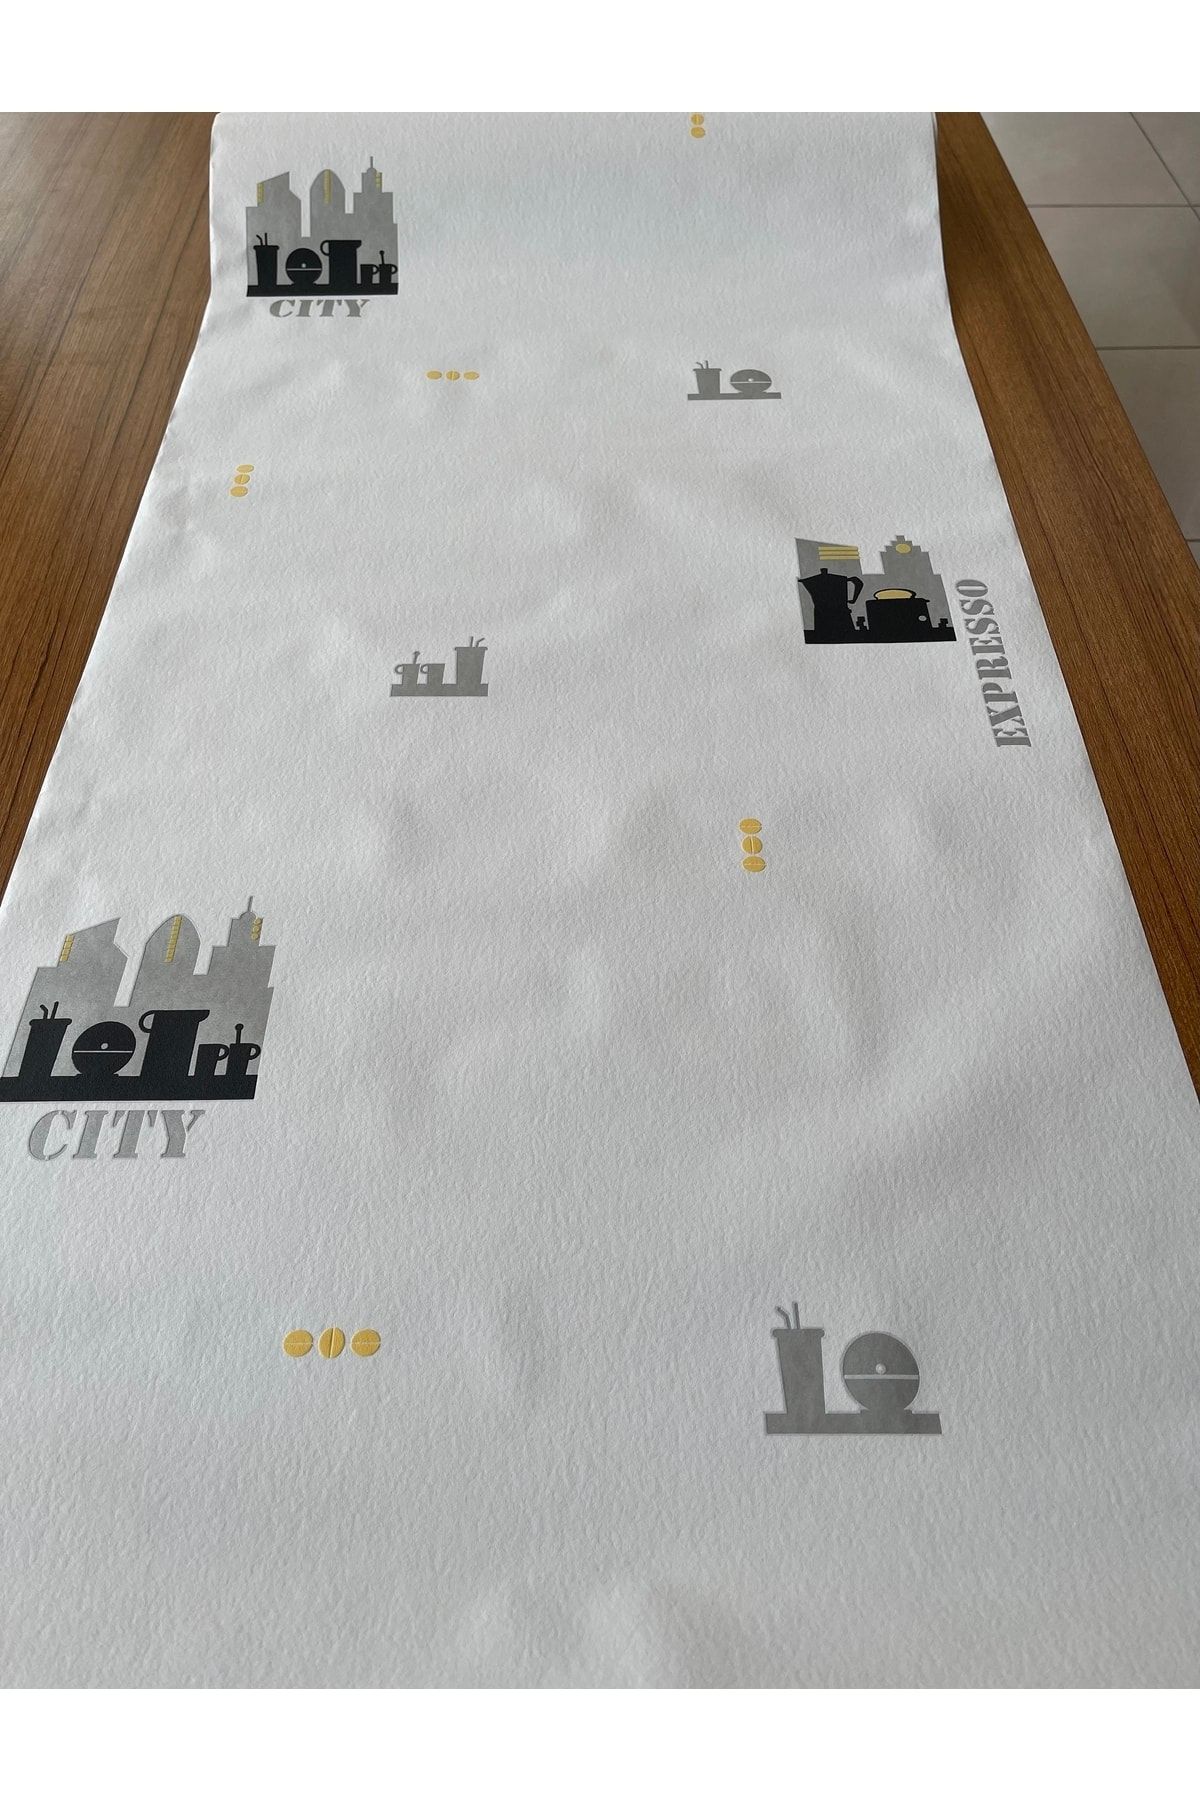 BAŞYAPI DİZAYN Beyaz Zemin Üzeri Gri-siyah-sarı Desenli Ithal Duvar Kağıdı (5m²)